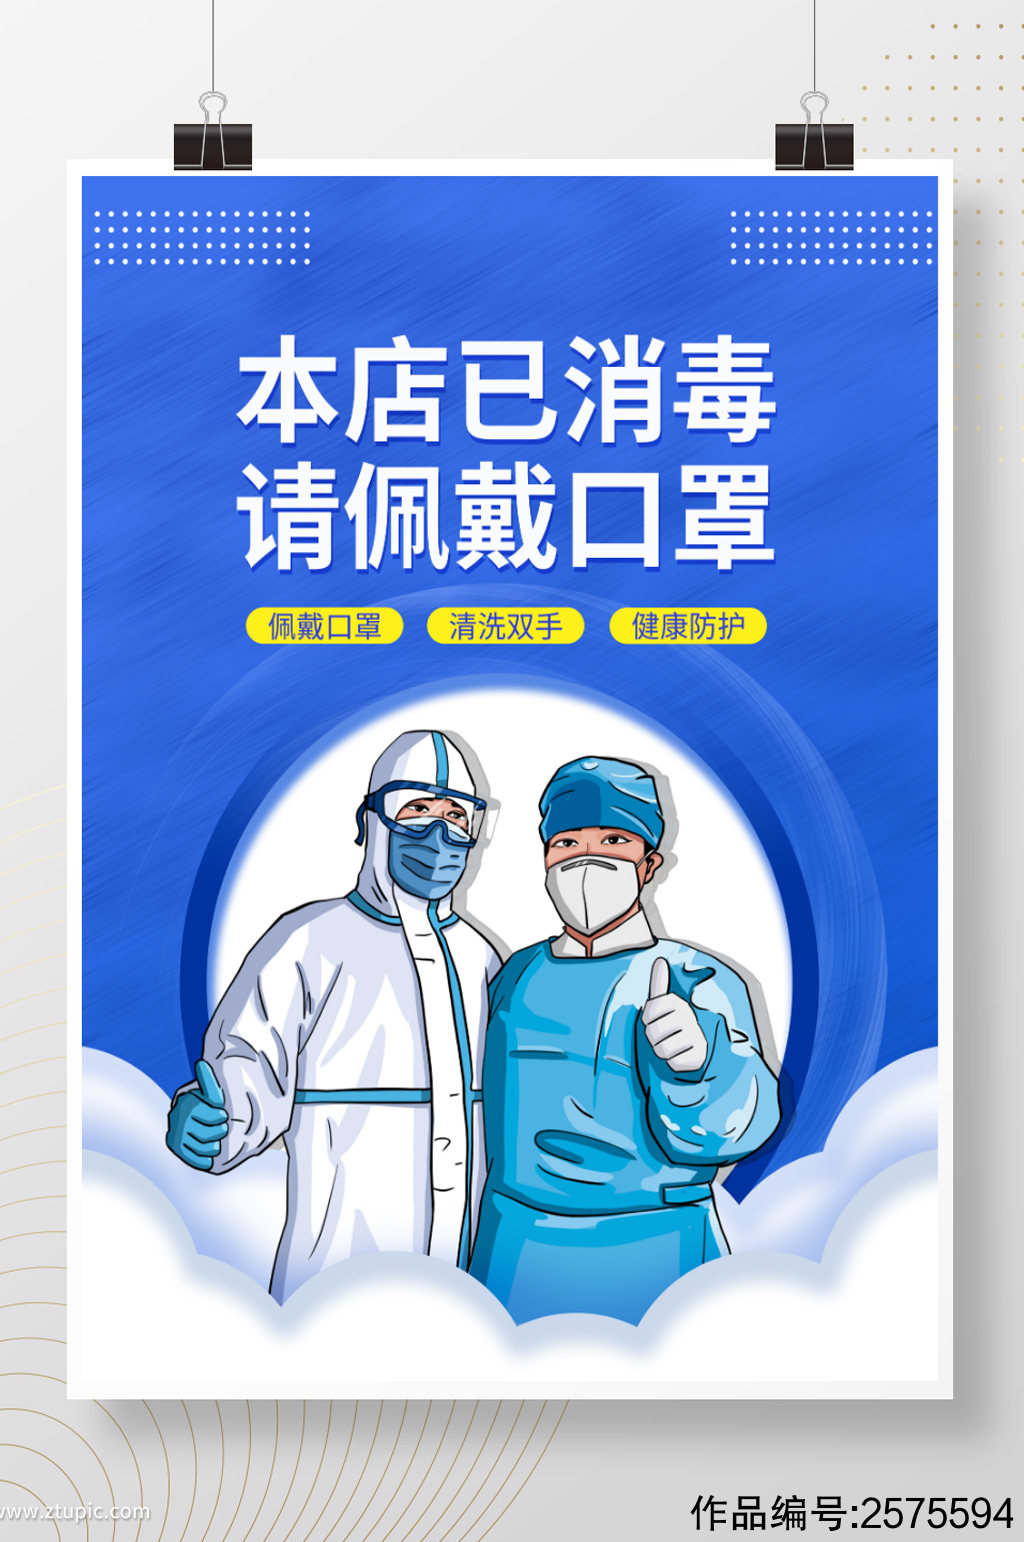 新冠防疫疫情防控佩戴口罩温馨提示蓝色海报